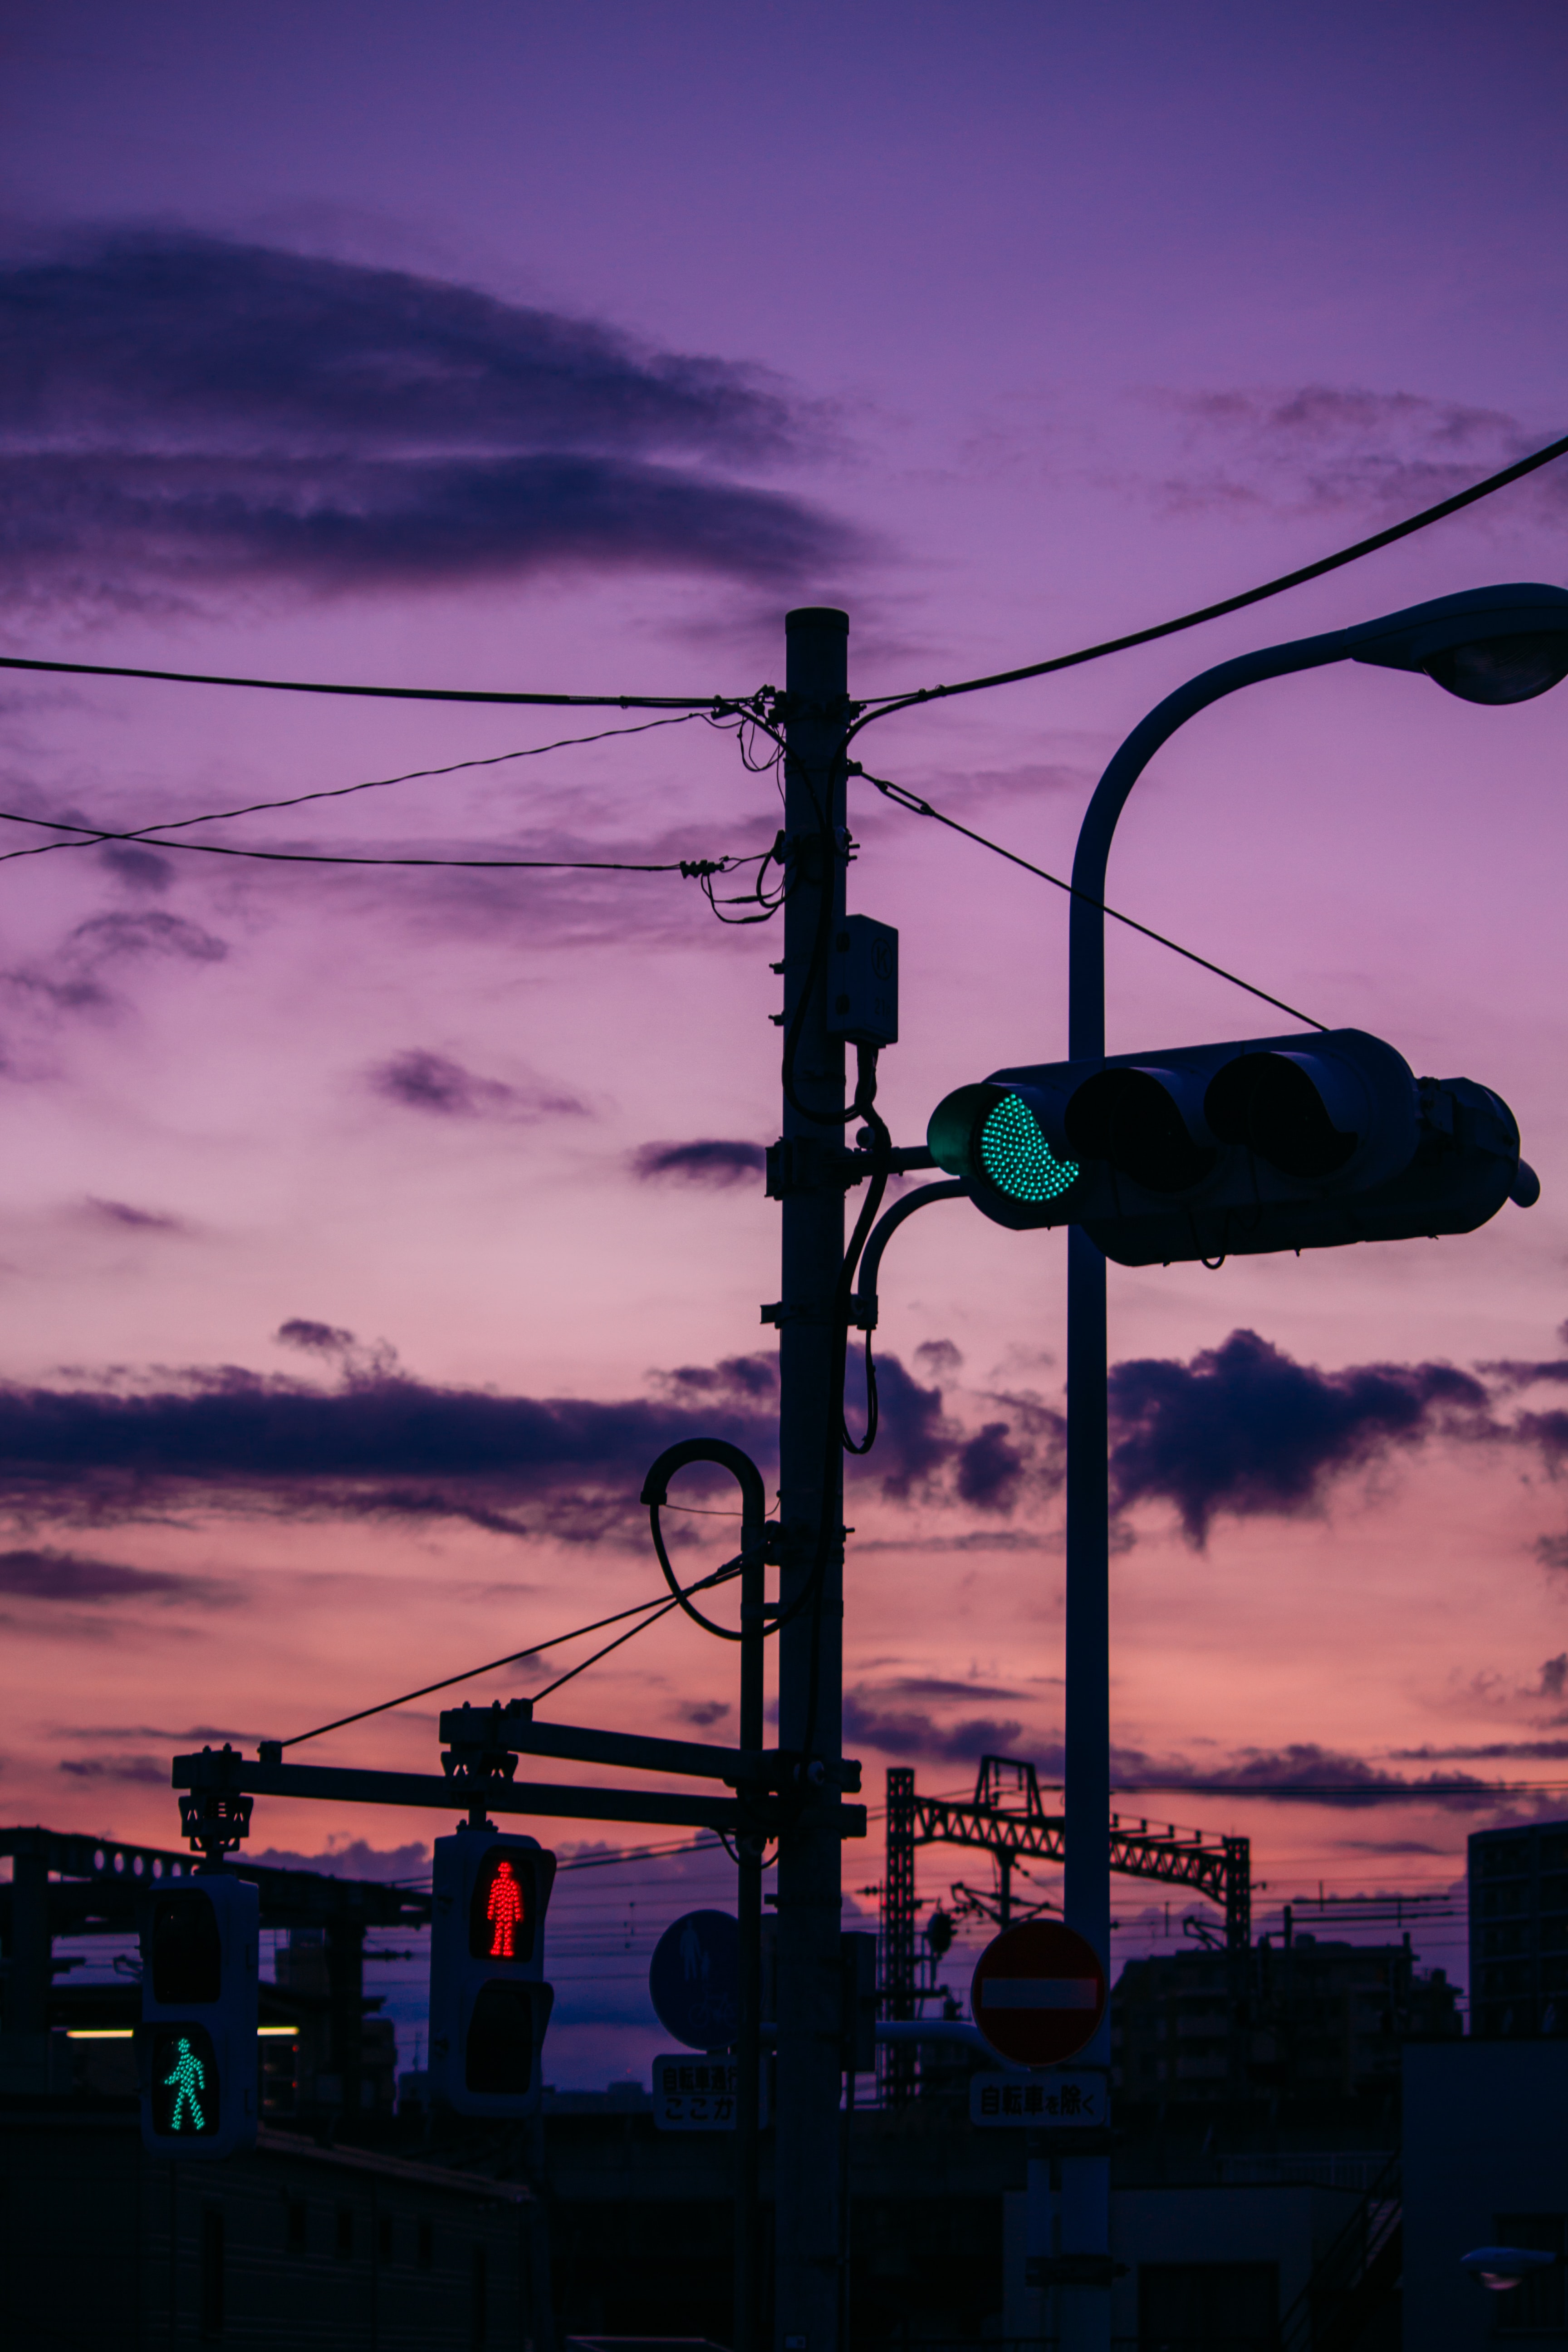 twilight, traffic light, dark, dusk, evening, wires, wire